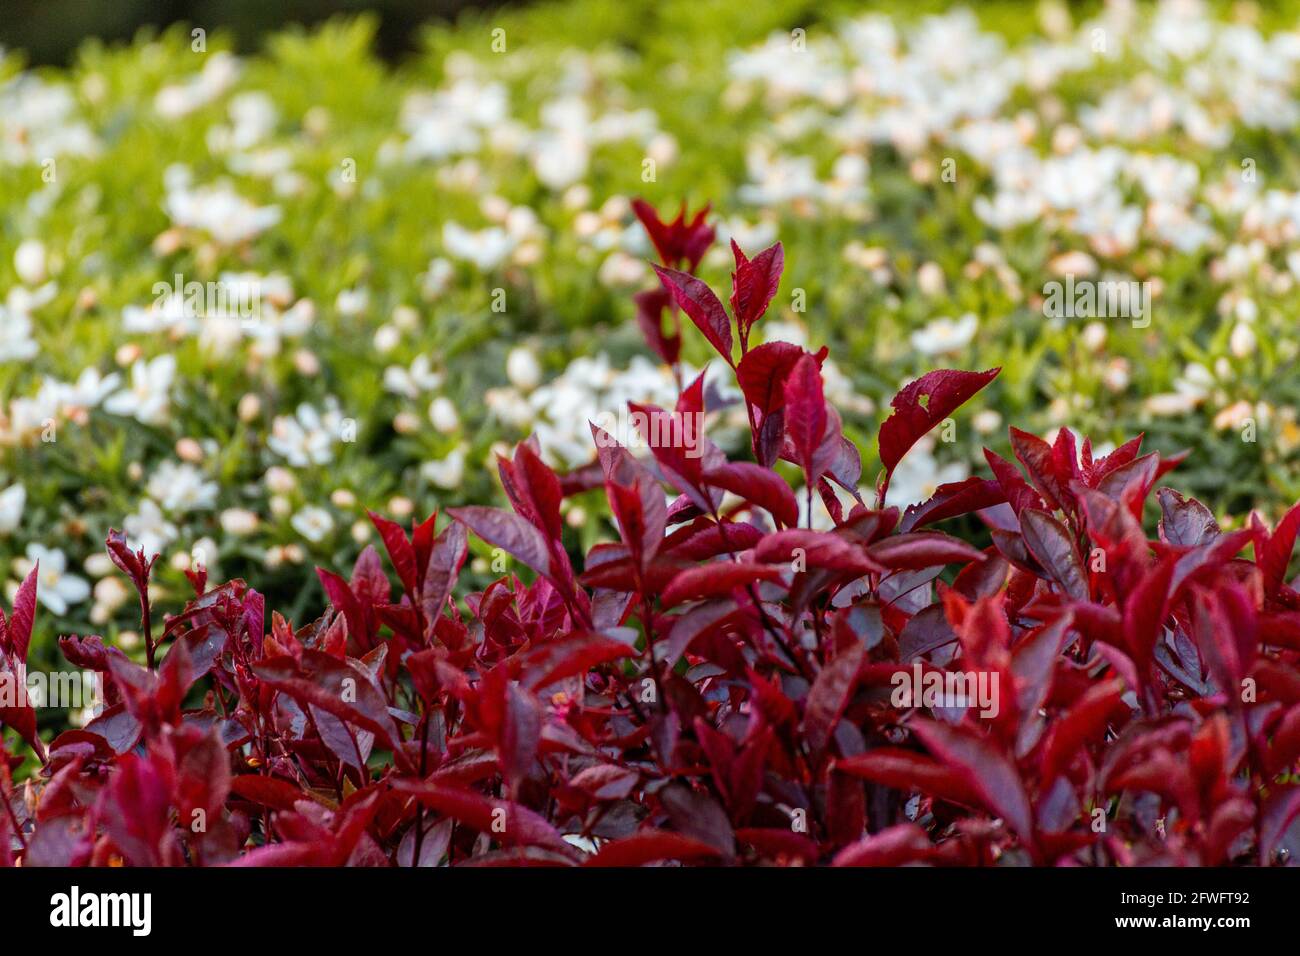 Primer plano de un grupo de hojas rojas y se tuerce un fondo borroso de arbustos verdes con flores blancas en un día soleado Foto de stock